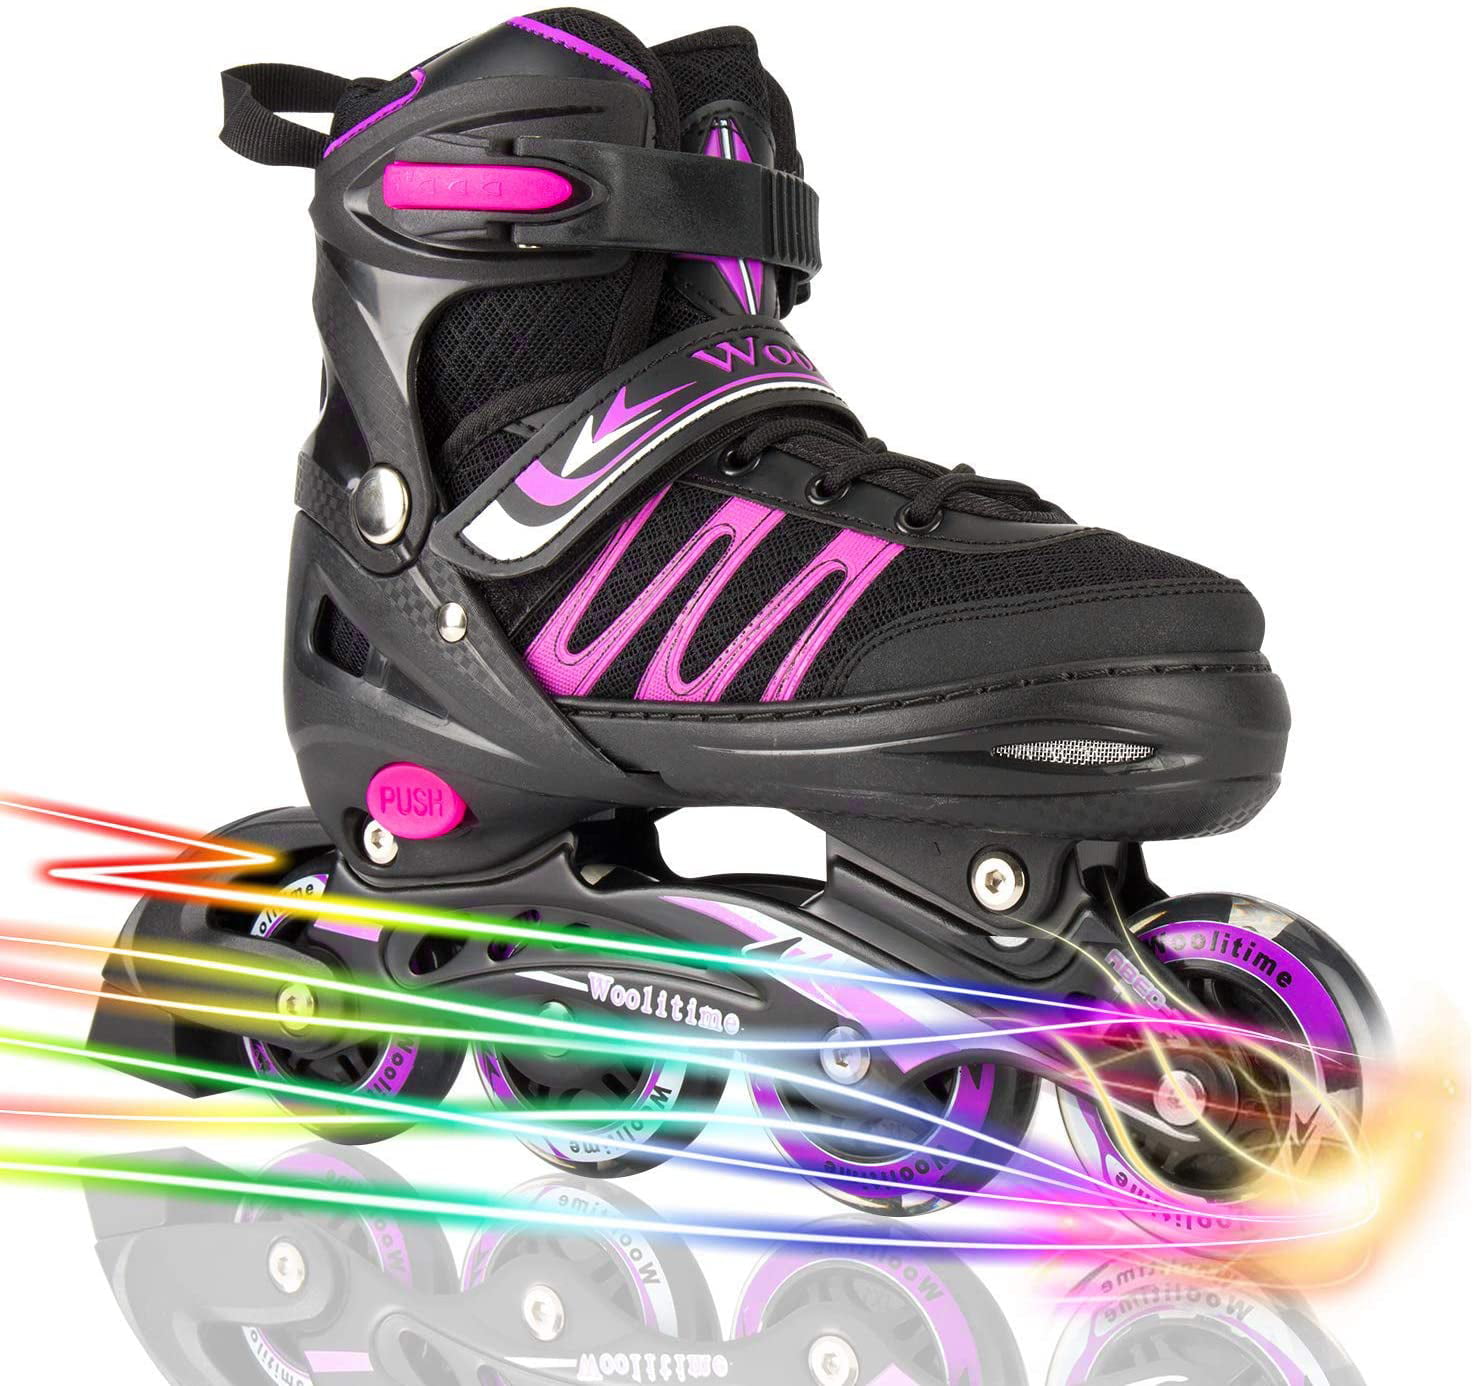 Inline Roller Skates for Kids/Boys/Girls Inline Skates Kids Roller Blades with Light Up Wheels Kids Inline Skates Adjustable Size ABEC 7 Bearings Mixhomic Adjustable Roller Skates Boys Girls 